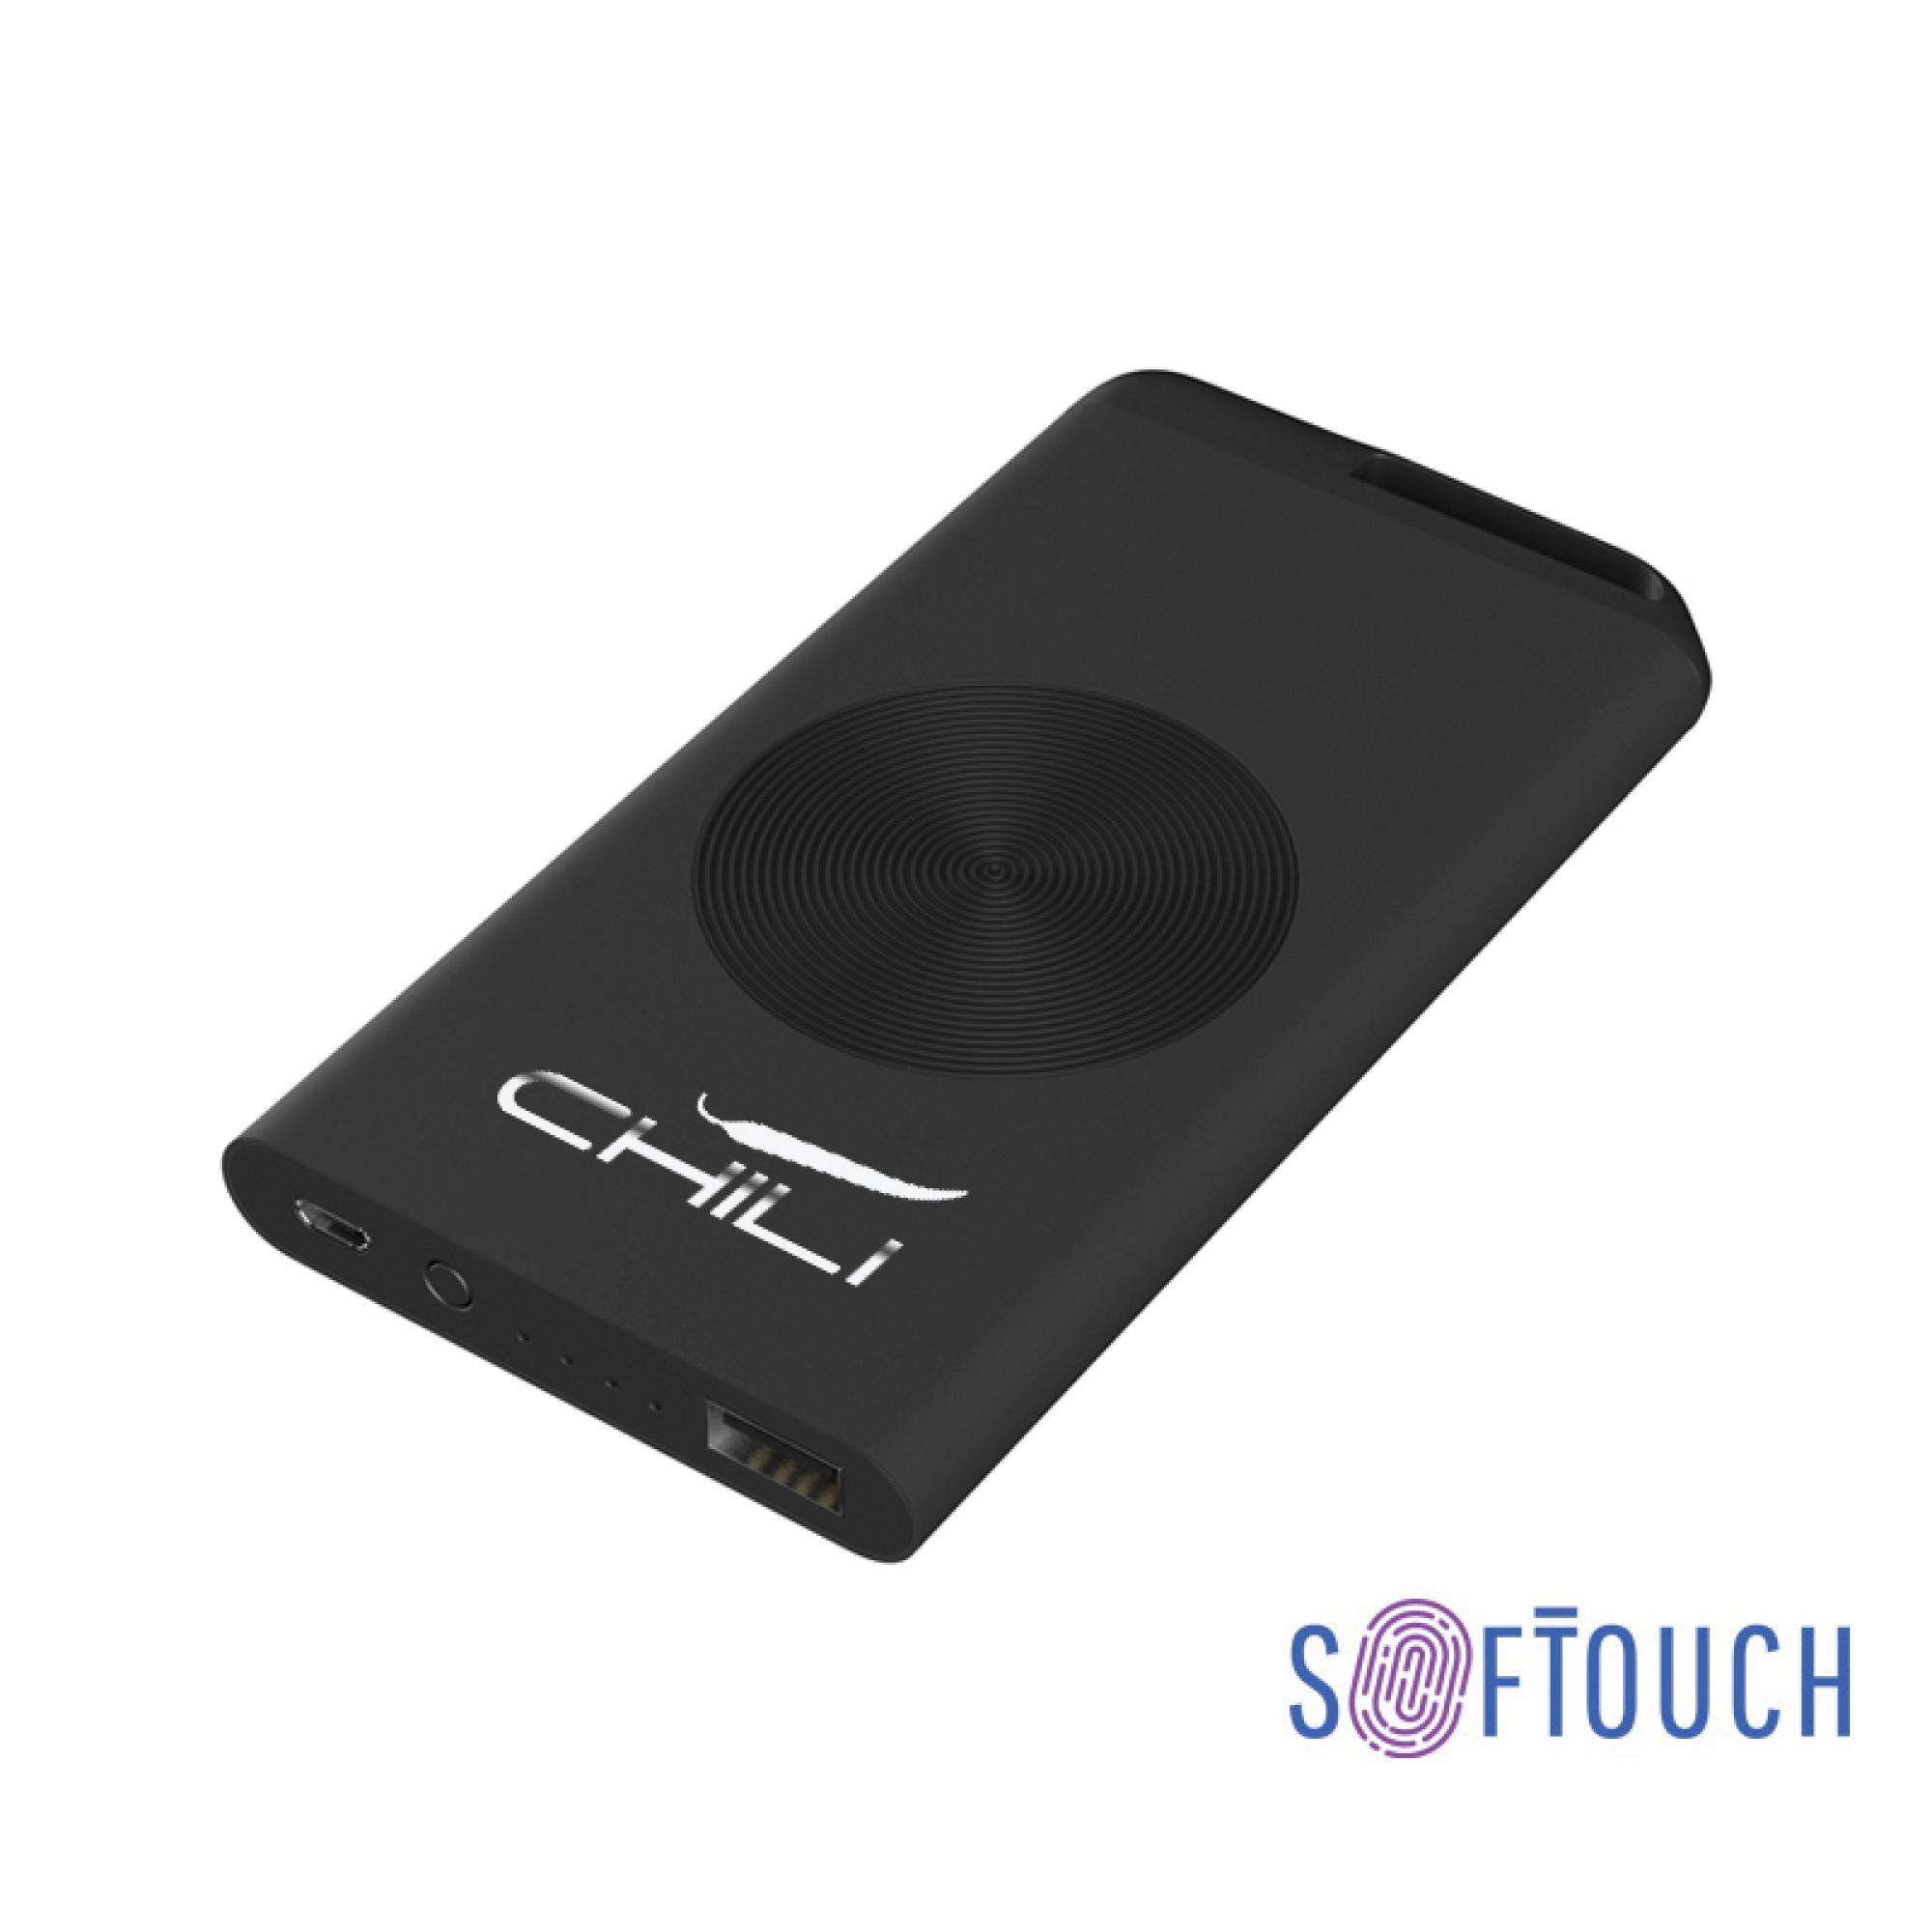 Зарядное устройство "Theta", 6000 mAh, 2 выхода USB, покрытие soft touch, цвет черный - купить оптом